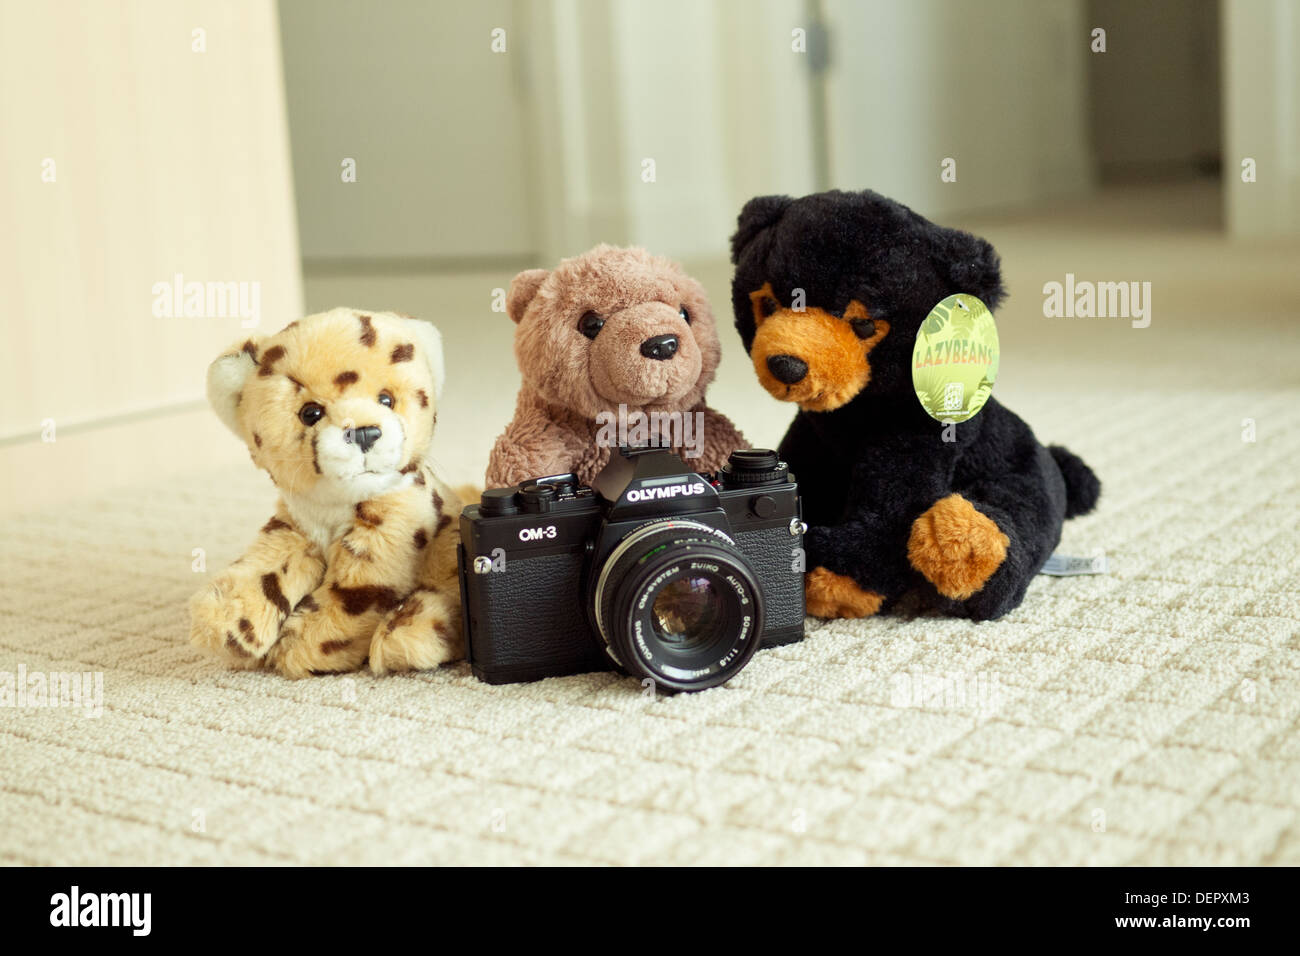 Il mondo è più bello di ghepardo, orso bruno e black bear posano con il leggendario Olympus OM-3 Videocamera SLR. Foto Stock